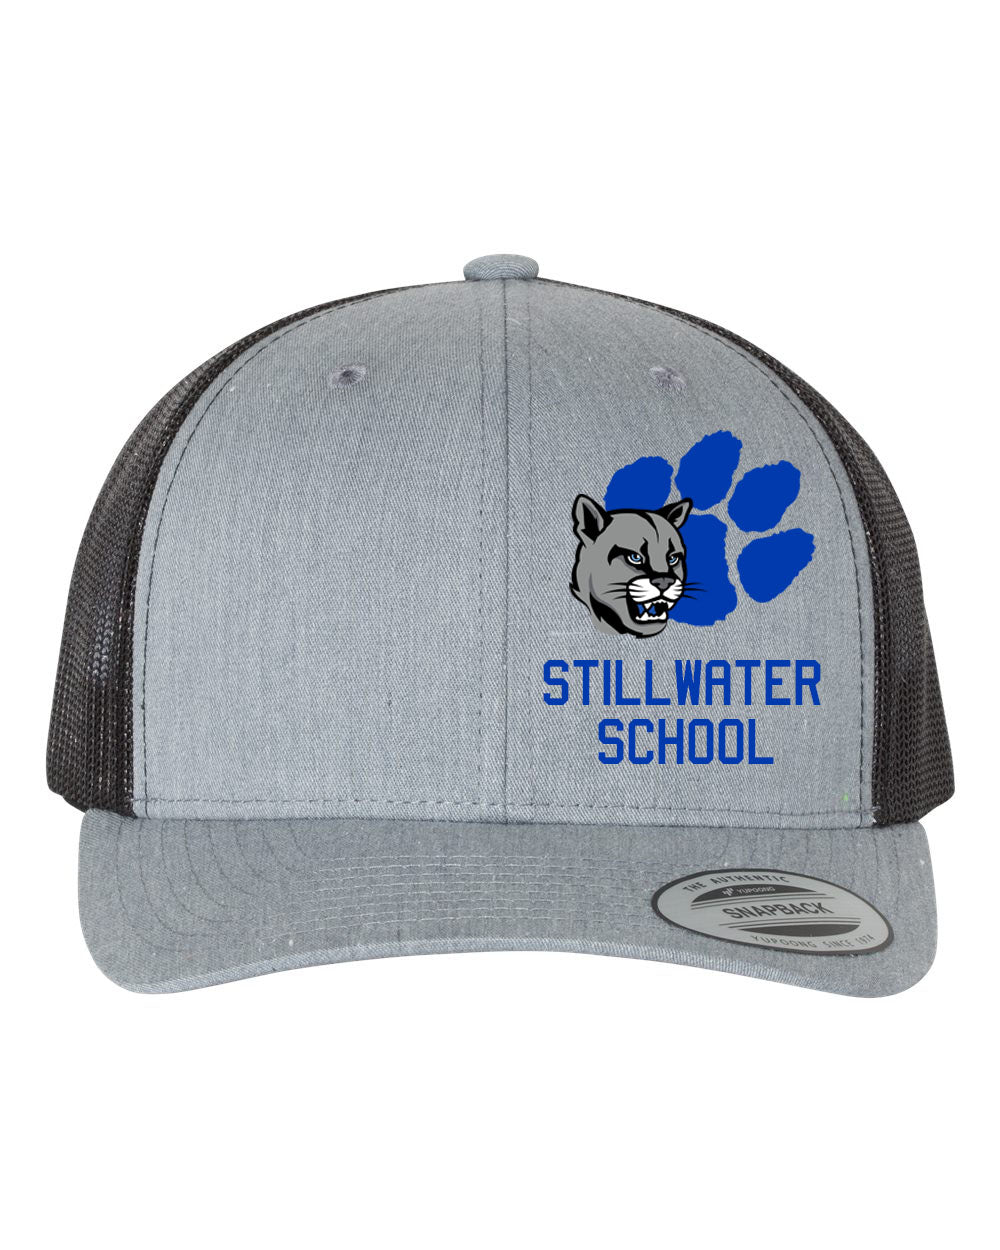 Stillwater Design 8 Trucker Hat